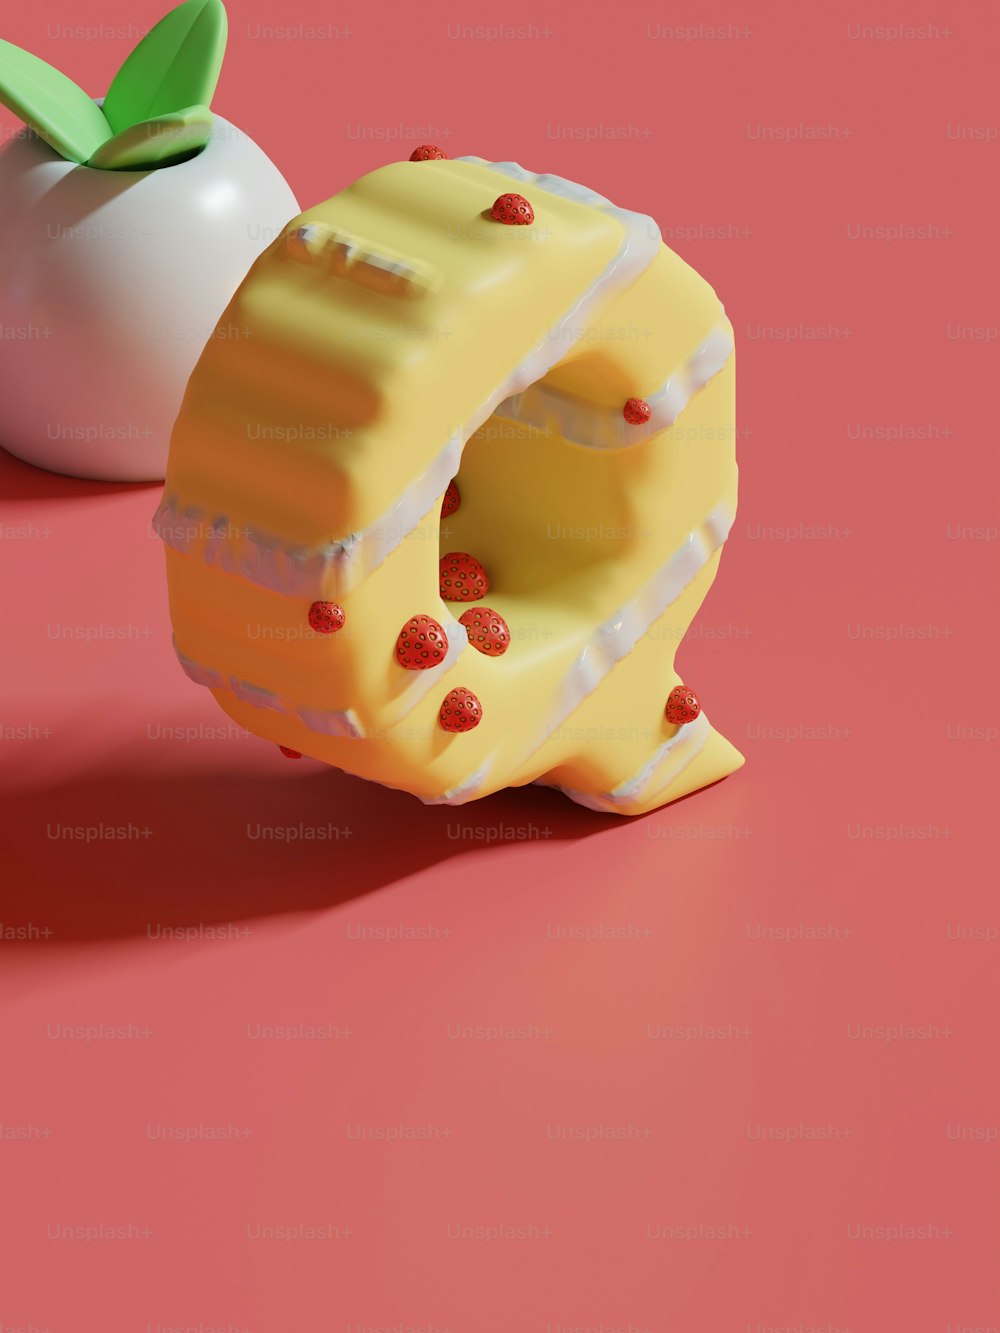 um pedaço de bolo ao lado de uma maçã em uma superfície rosa